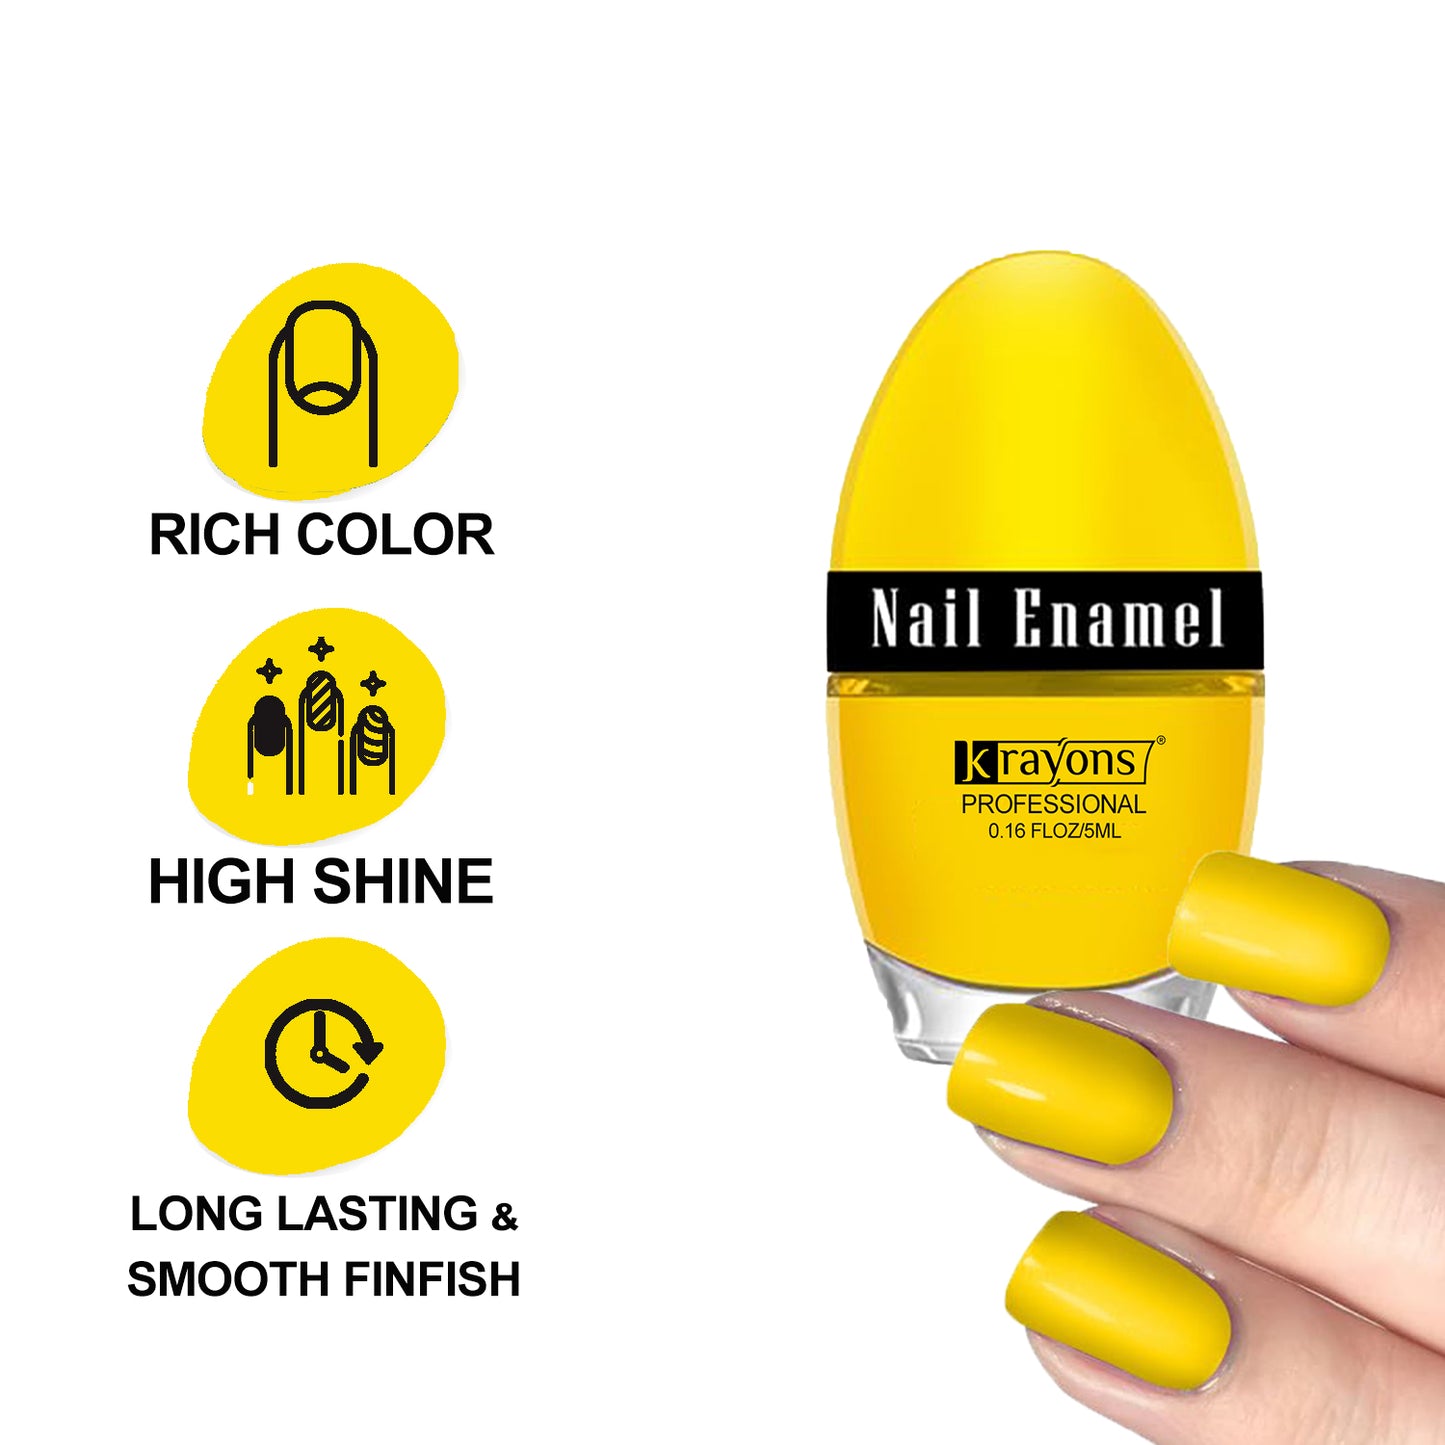 Krayons Professional Glossy Nail Paint, Lemon Yellow, 5ml